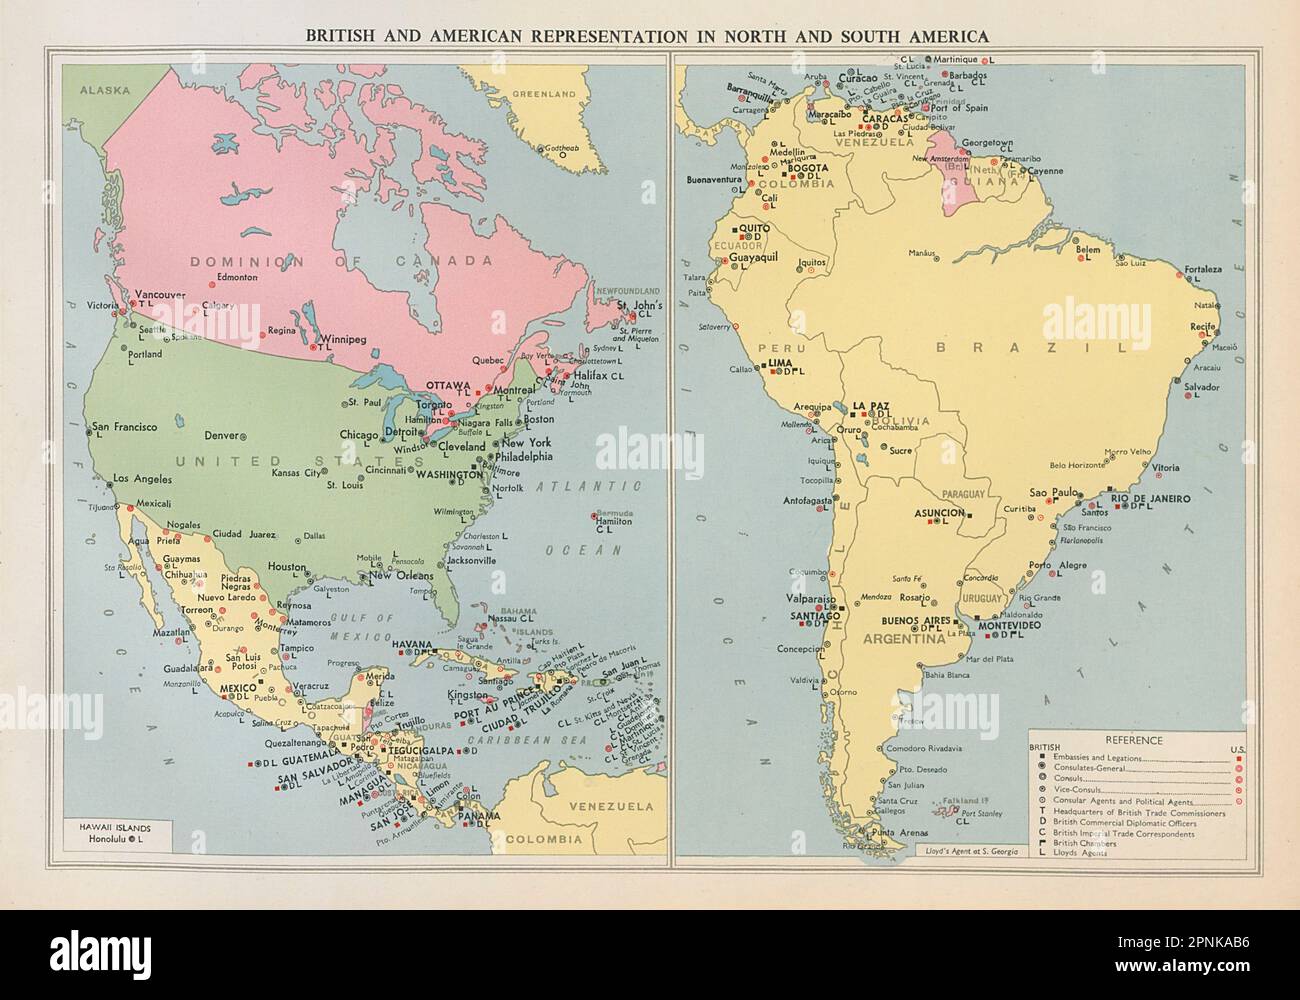 Rappresentanza diplomatica britannica e americana in Nord e Sud America 1952 mappa Foto Stock